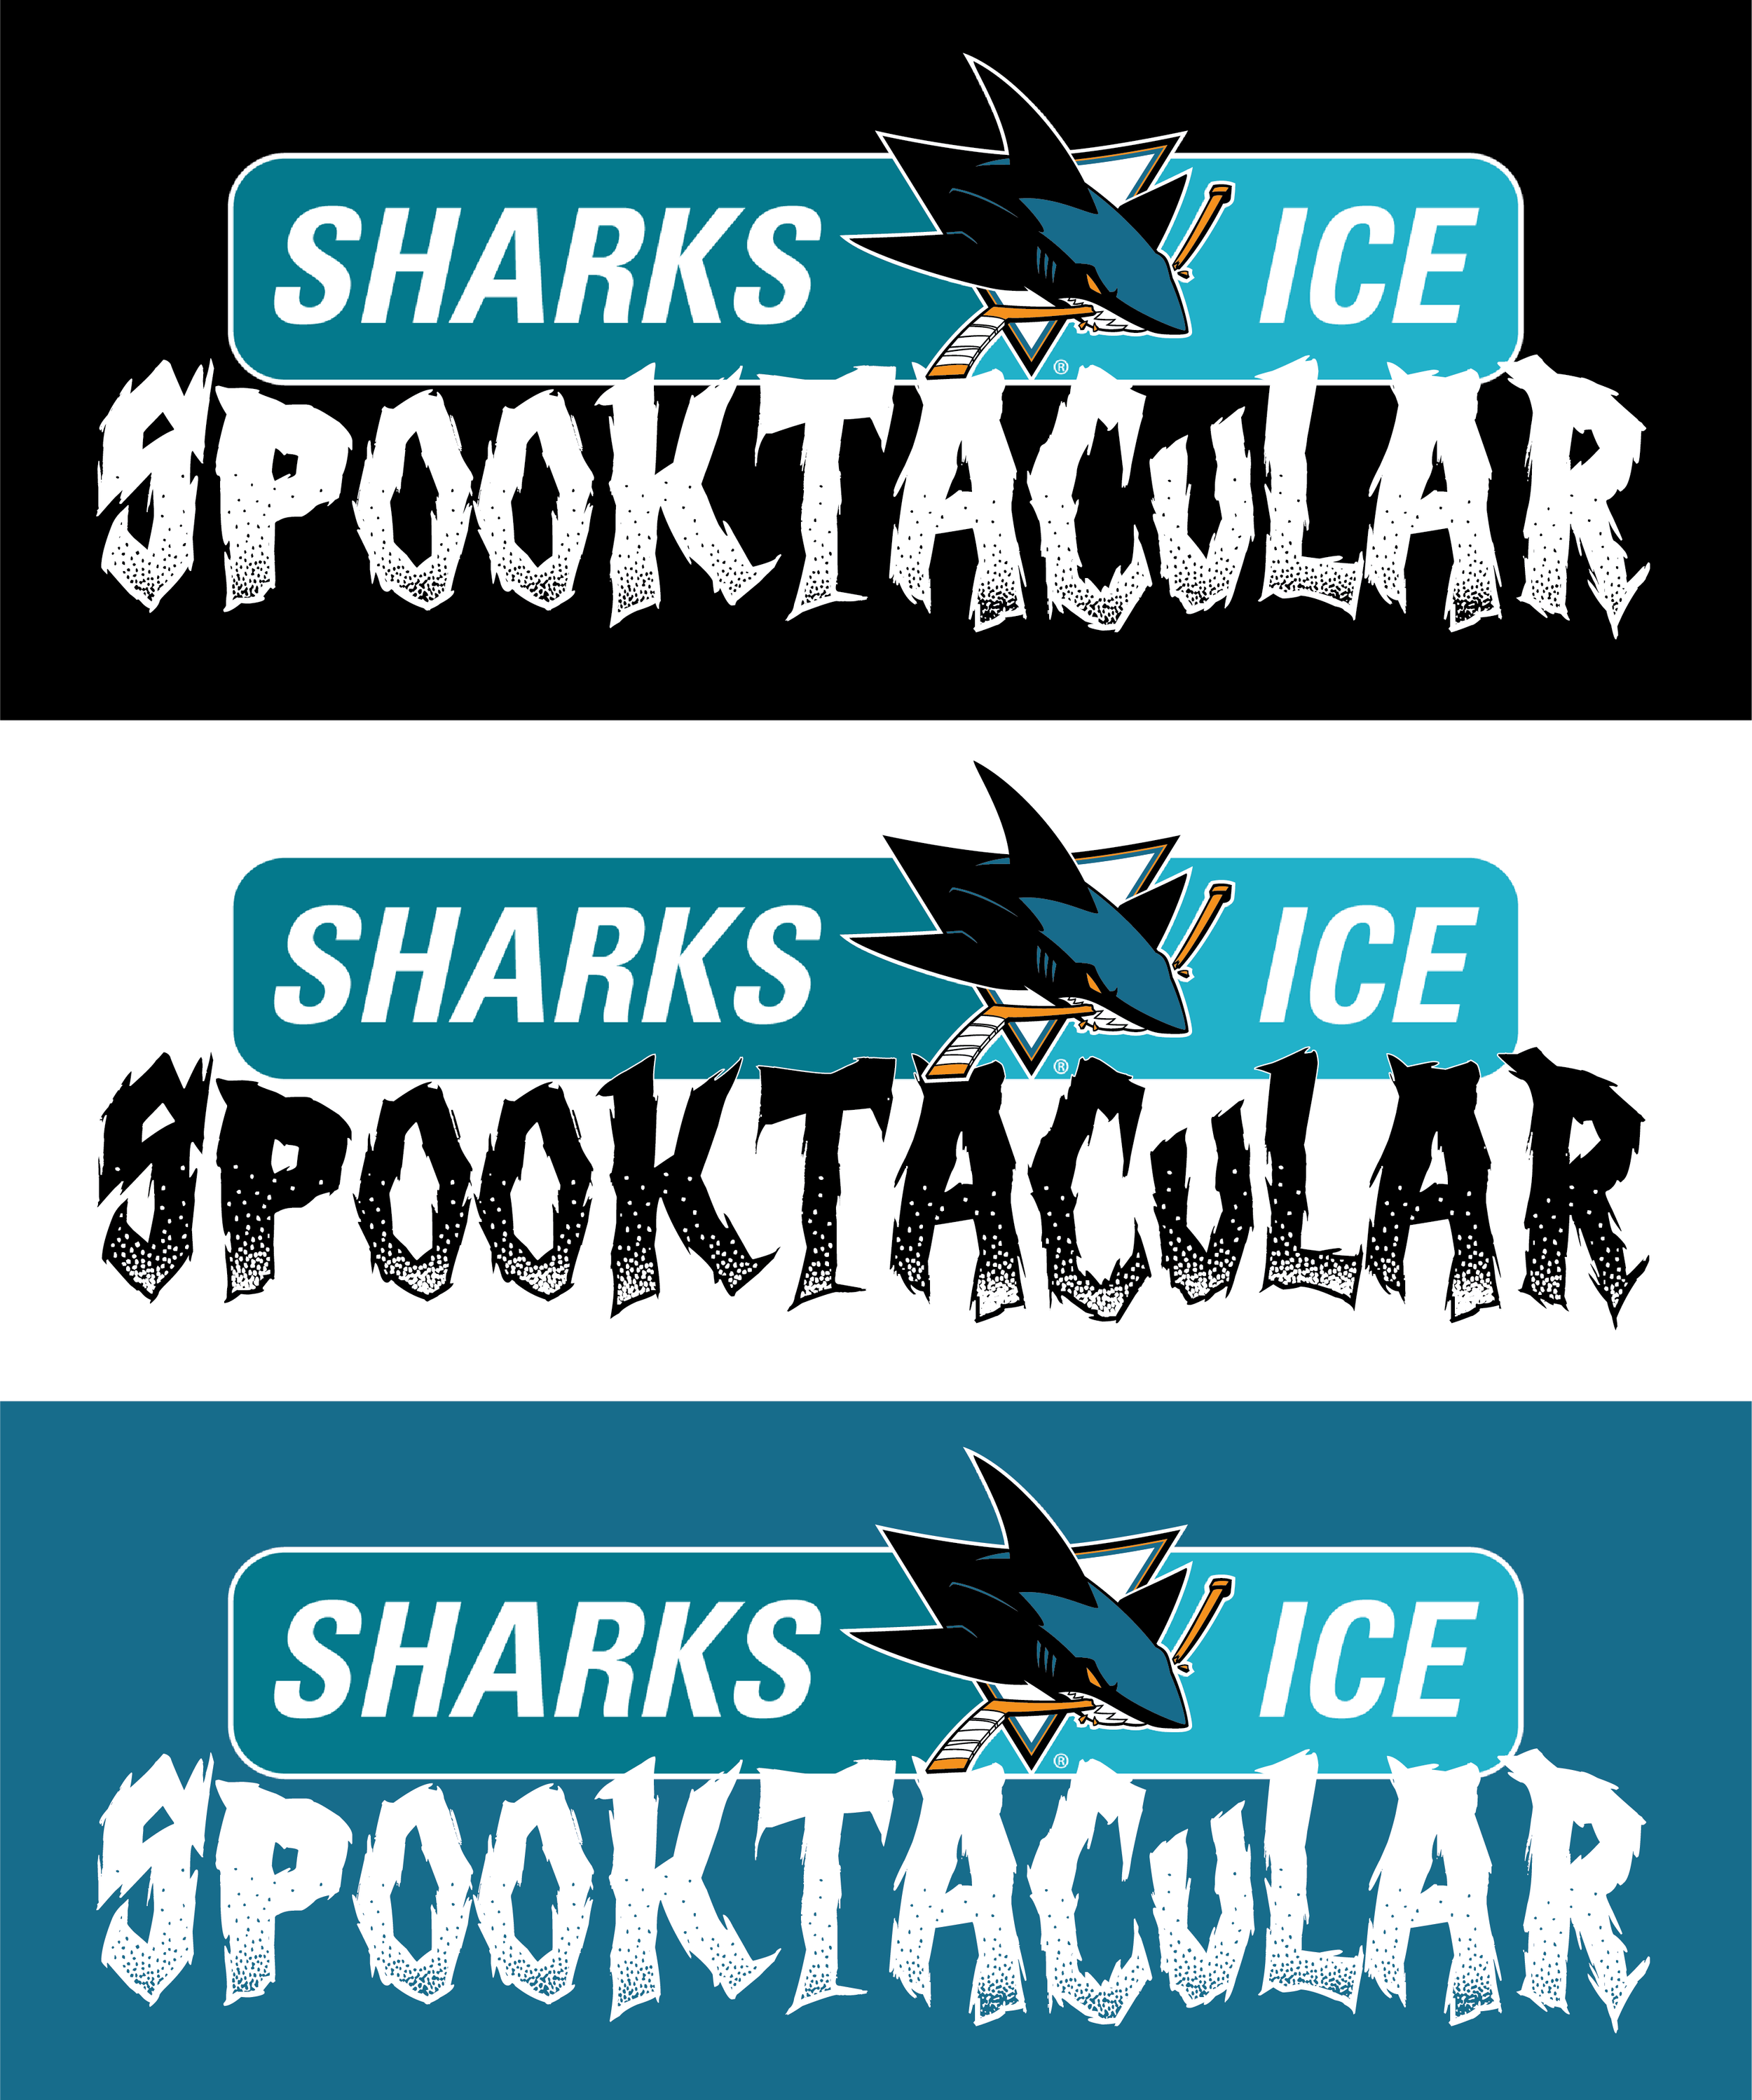 SharksIceSpooktacular_Logo.png